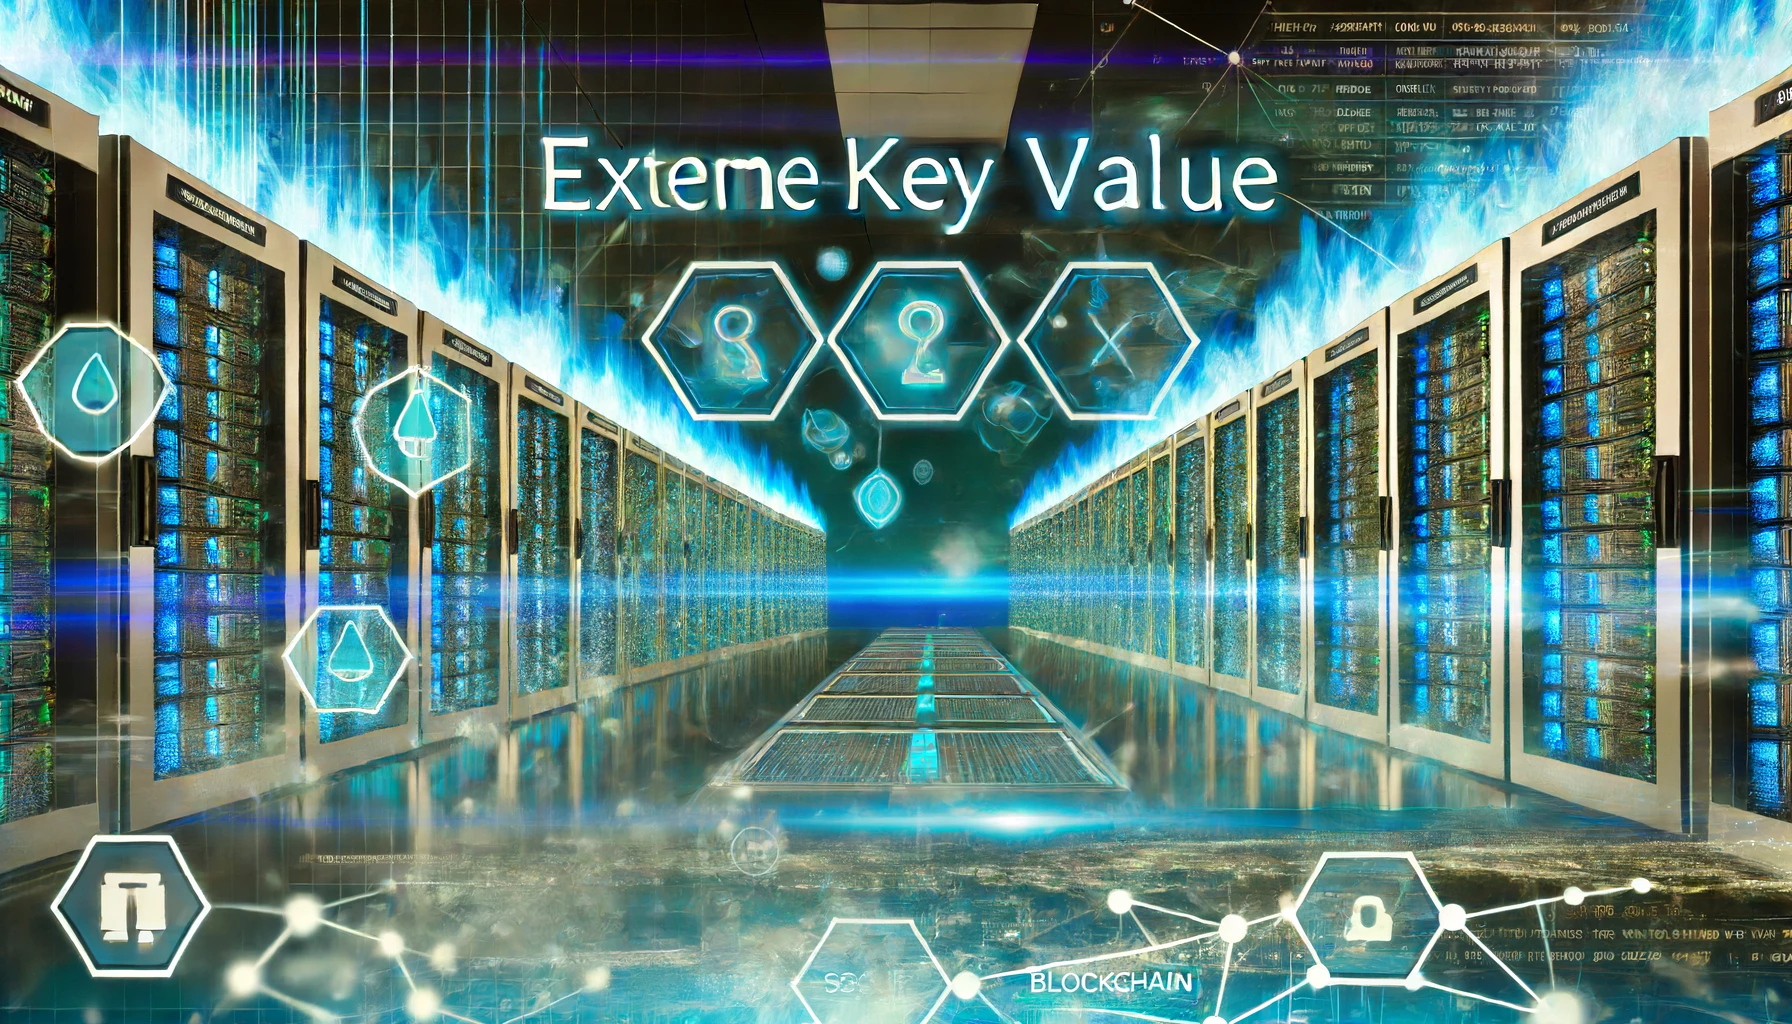 eXtreme Key Value